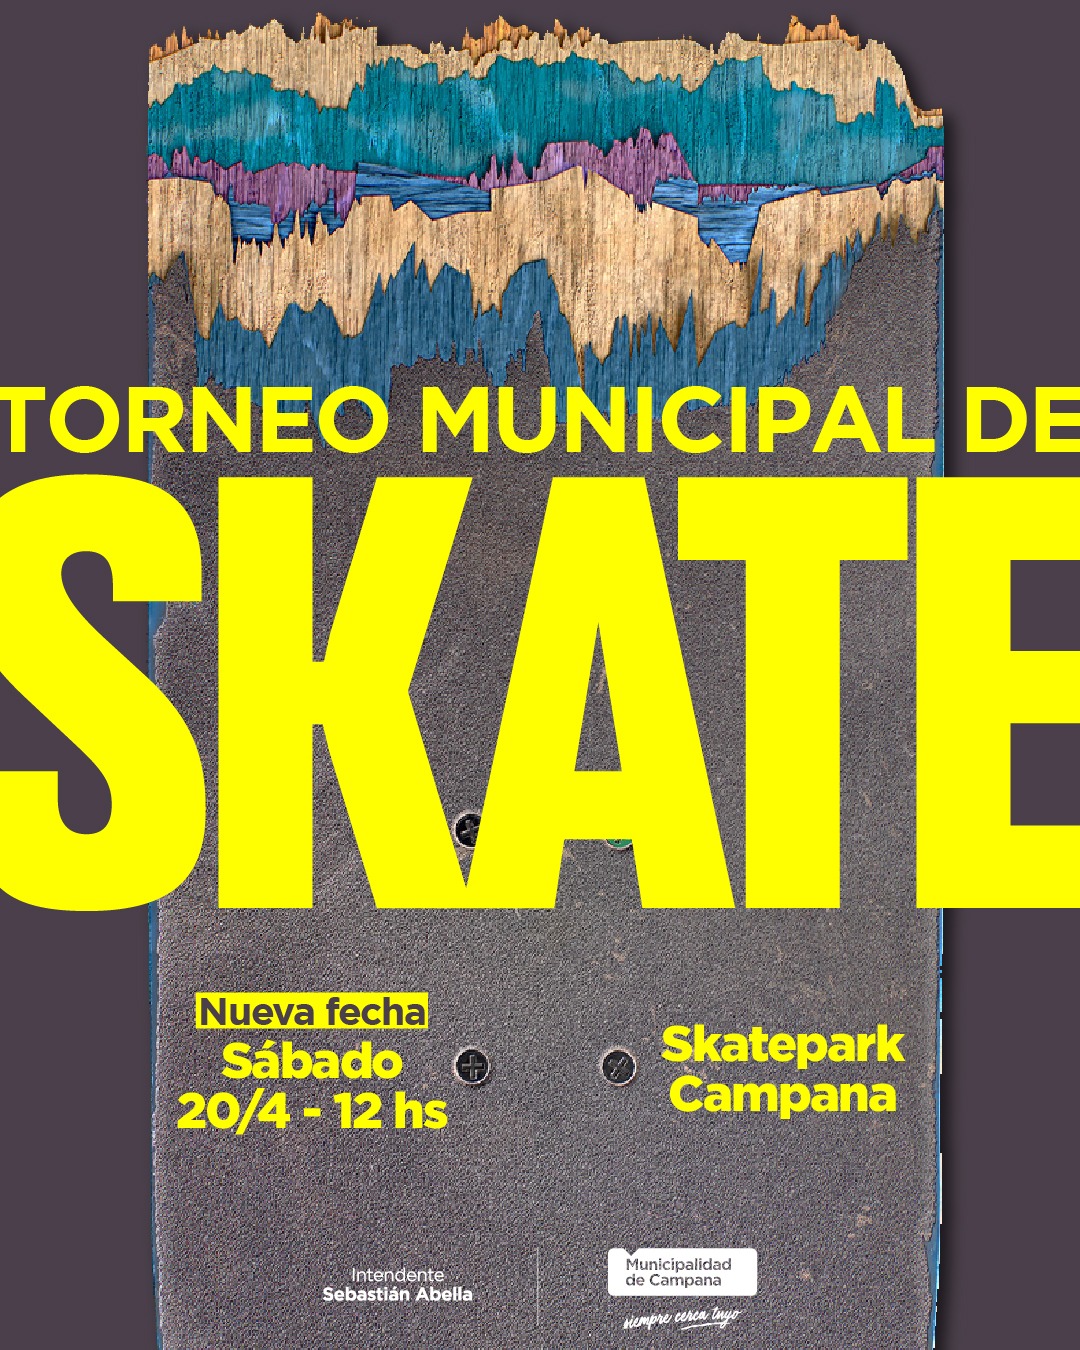 Este sábado se realizará el torneo municipal de skate